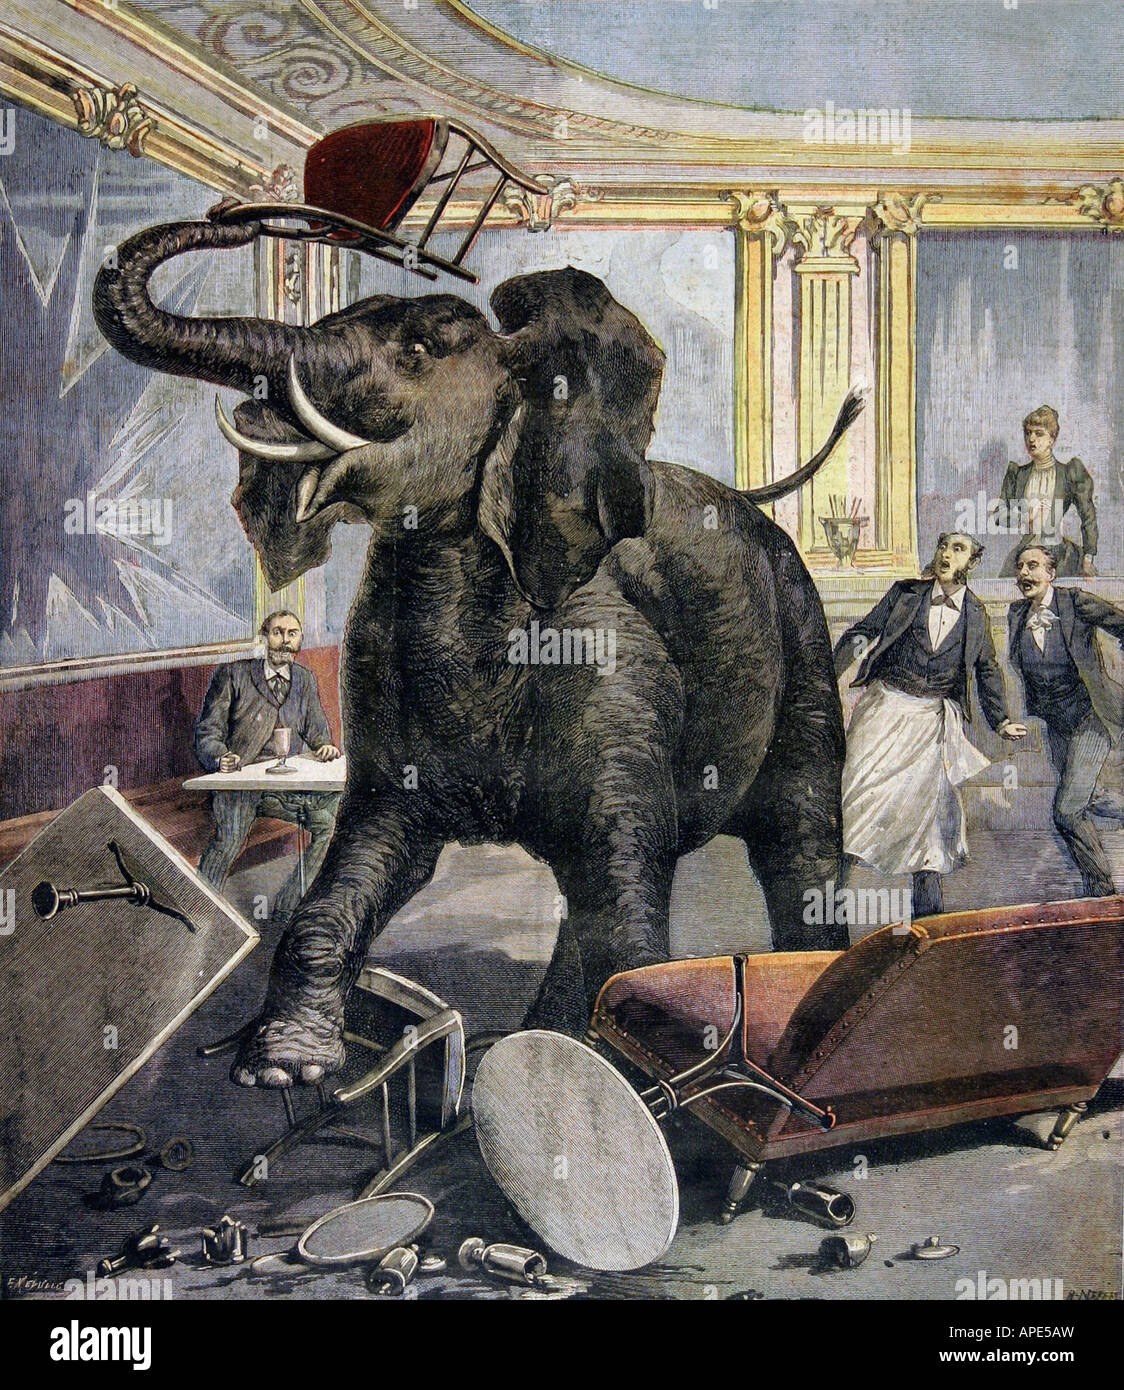 Presse/Medien, Zeitschriften, "Le Petit Journal", Paris, 2. Band, Nummer 51, illustrierte Beilage, 14. November 1891, Illustration, "Ein Elefant im Café", Stockfoto